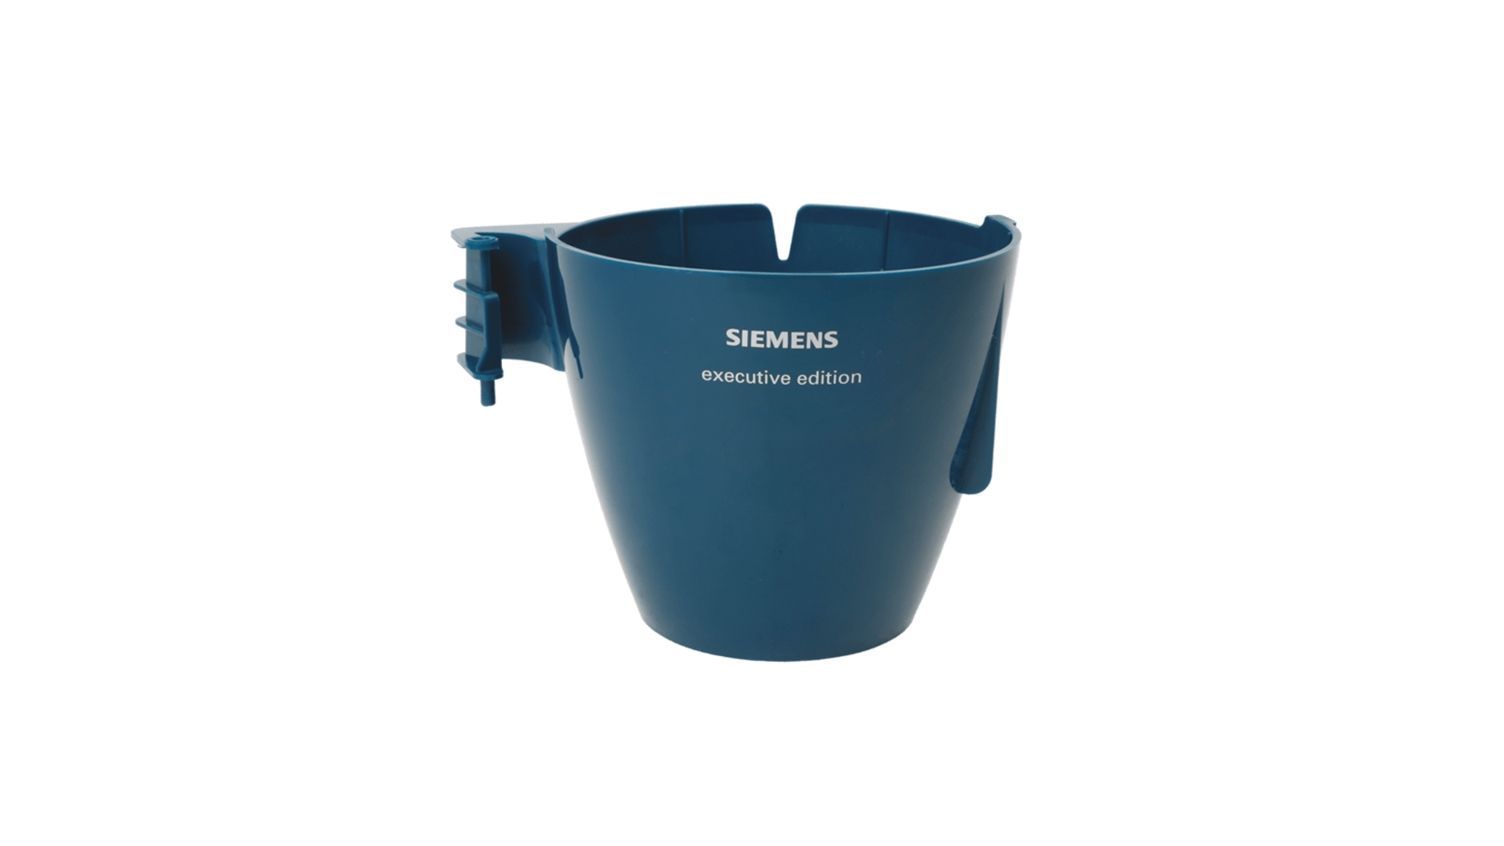 Filter Holder for Bosch Siemens Coffee Makers - 00649231 BSH - Bosch / Siemens